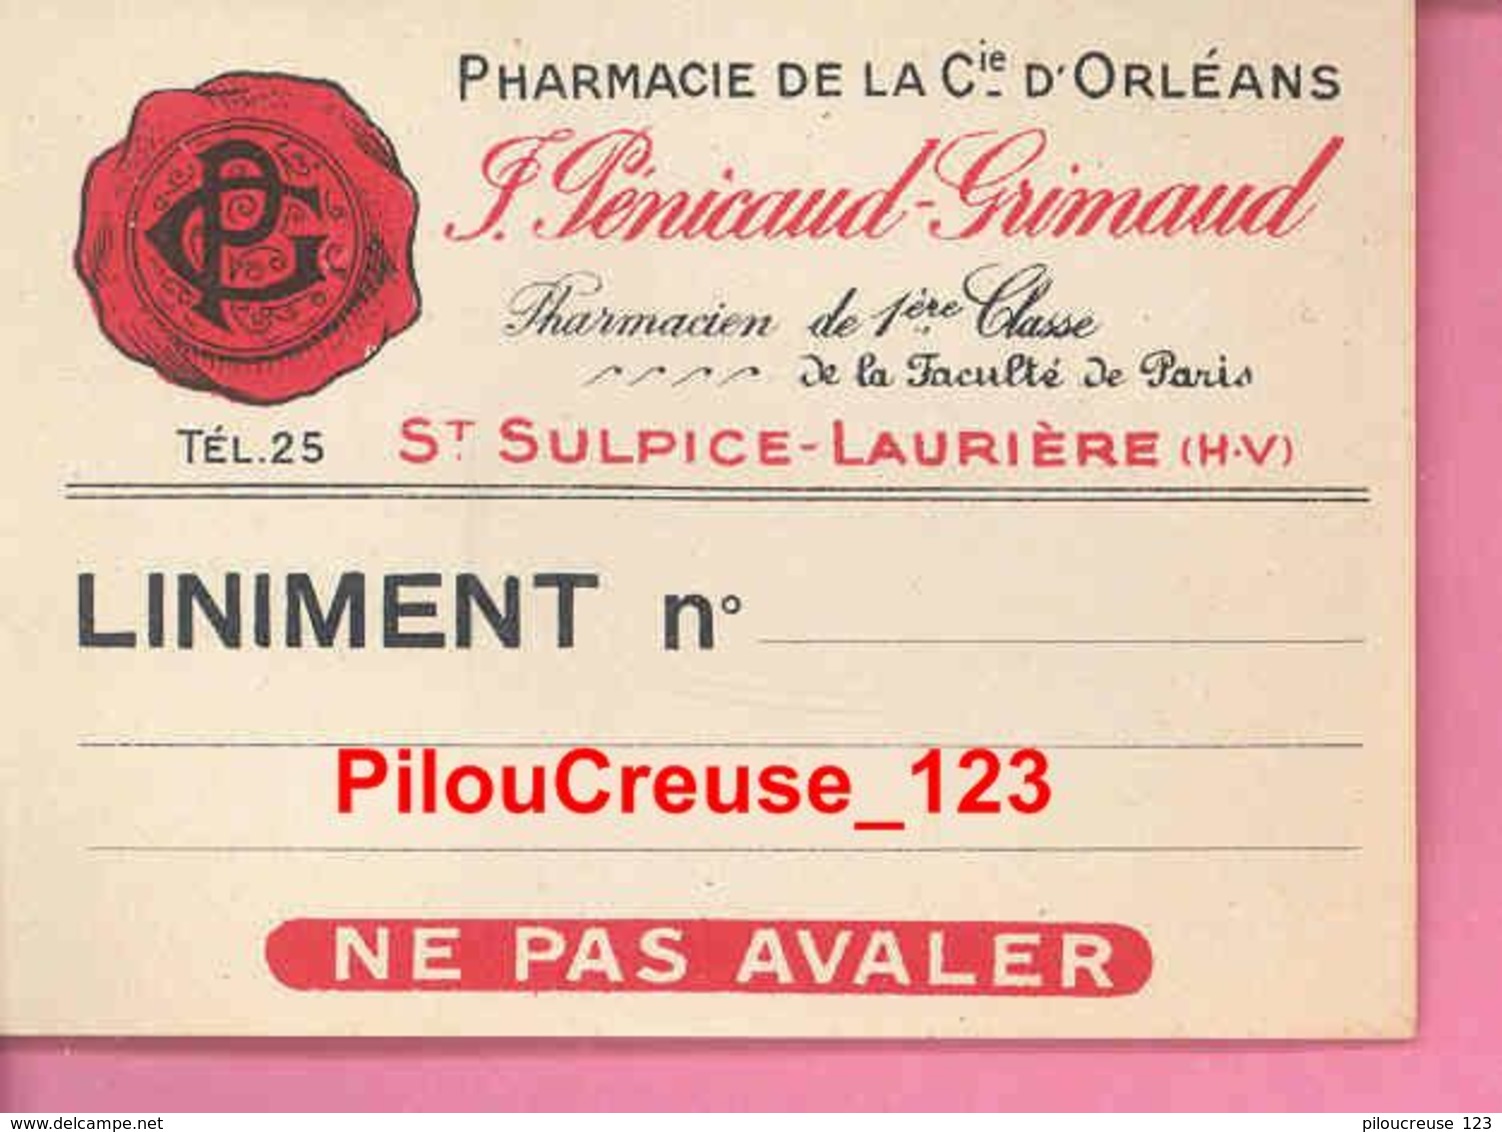 87 Haute Vienne - SAINTSULPICE LAURIERE - Pharmacie De La Cie D'Orléans J. PENICAUD GRIMAUD - Ticket LINIMENT - TBE - Matériel Et Accessoires